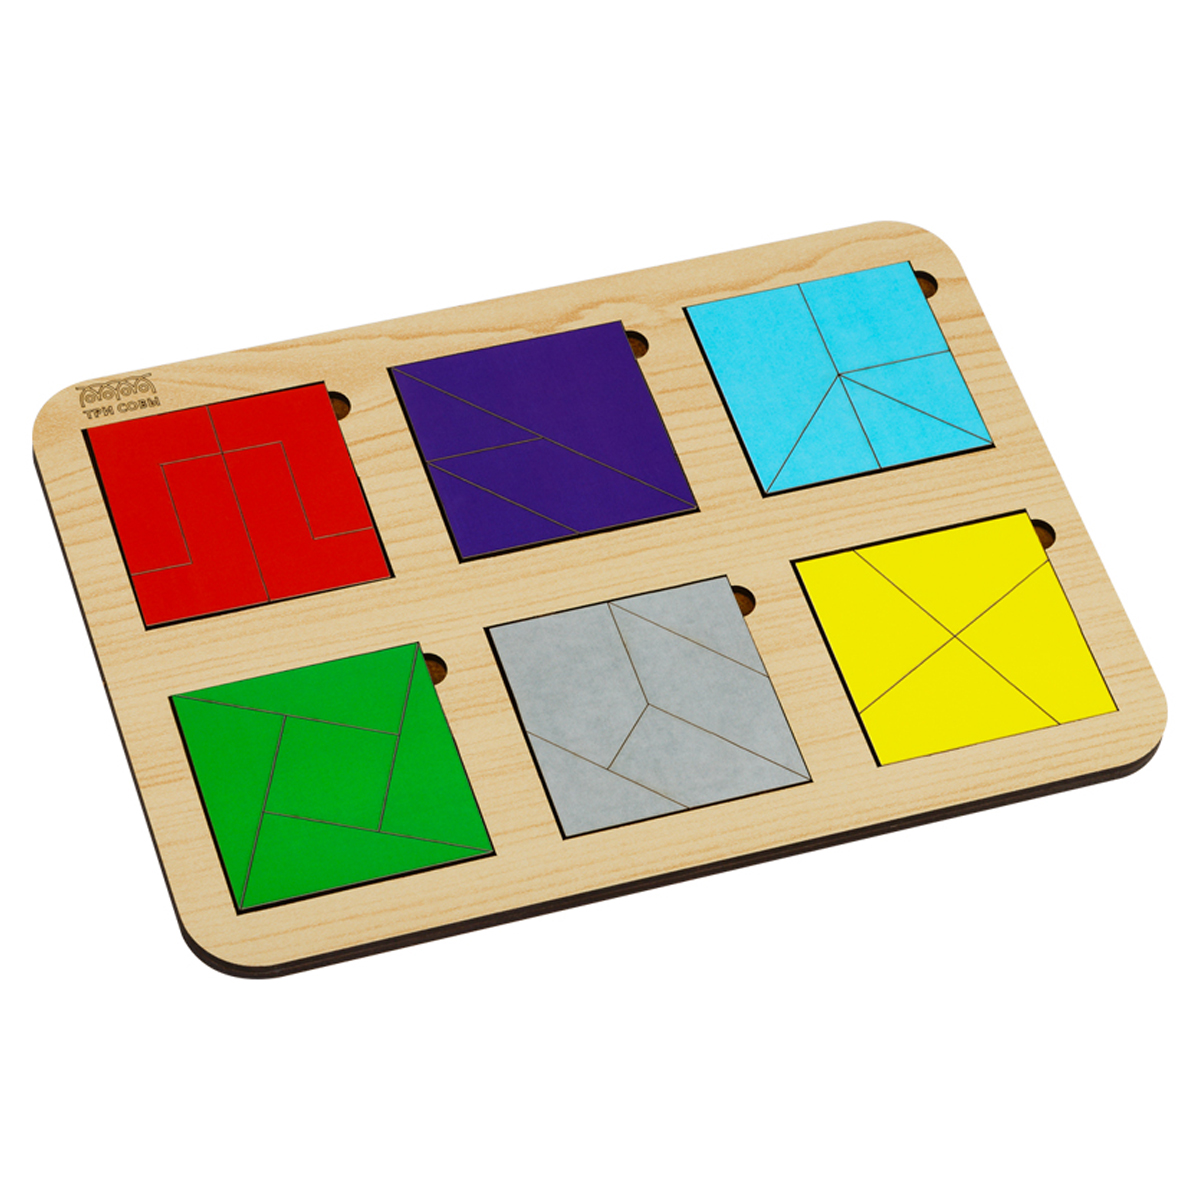 развивающая игрушка три совы пирамидка радуга дуга дерево 7 деталей классические а Развивающая игра ТРИ СОВЫ 